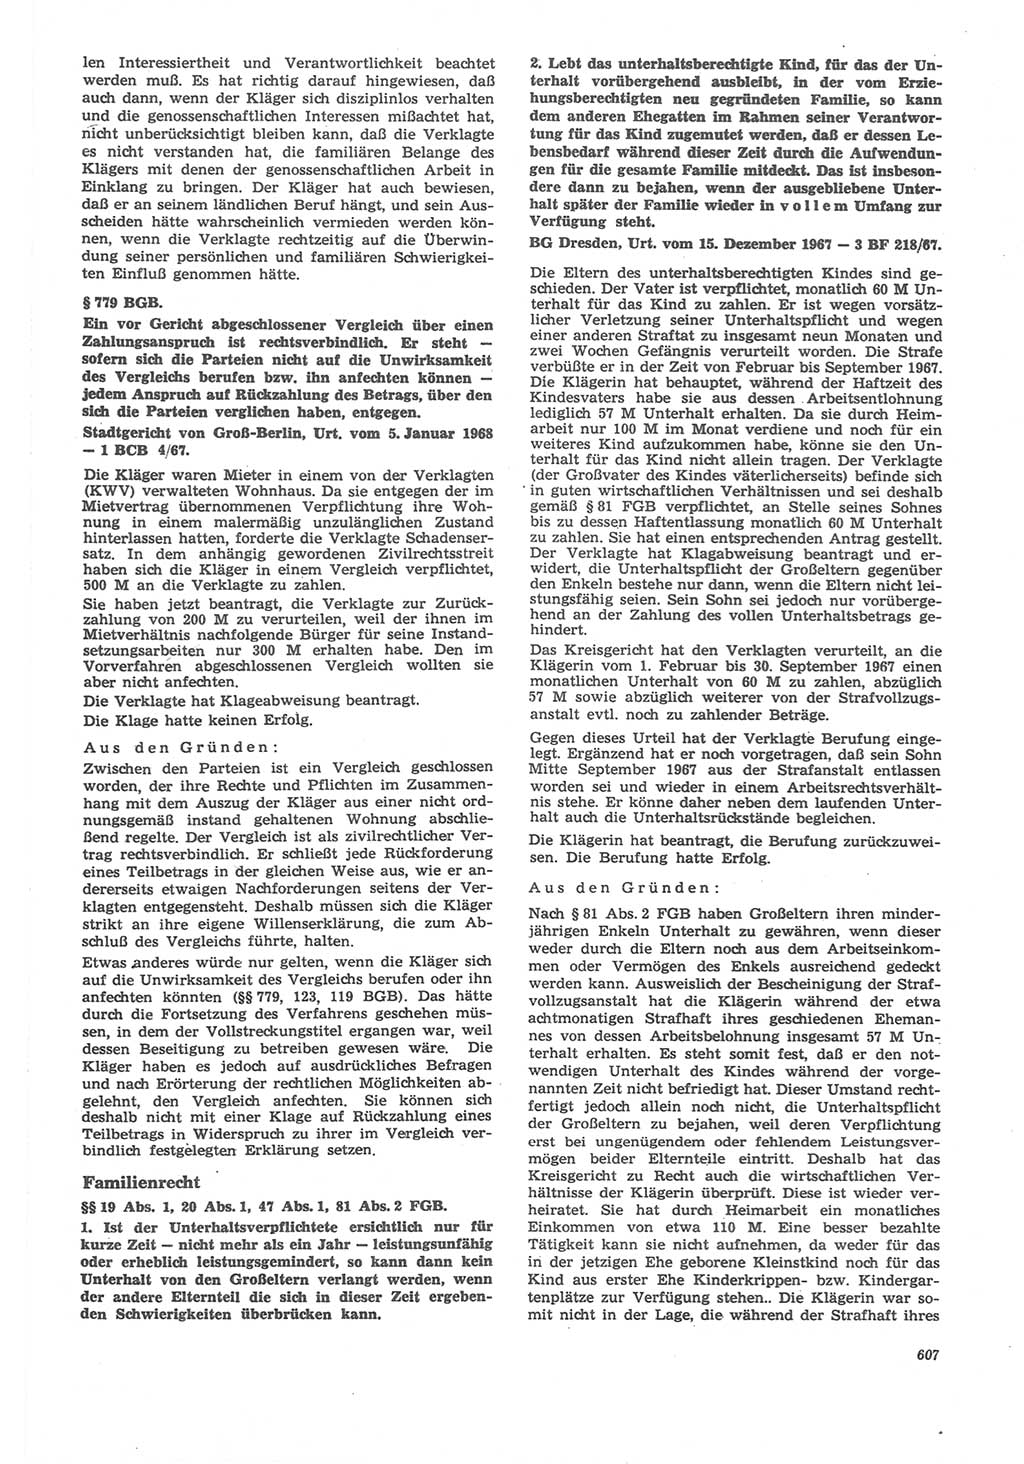 Neue Justiz (NJ), Zeitschrift für Recht und Rechtswissenschaft [Deutsche Demokratische Republik (DDR)], 22. Jahrgang 1968, Seite 607 (NJ DDR 1968, S. 607)